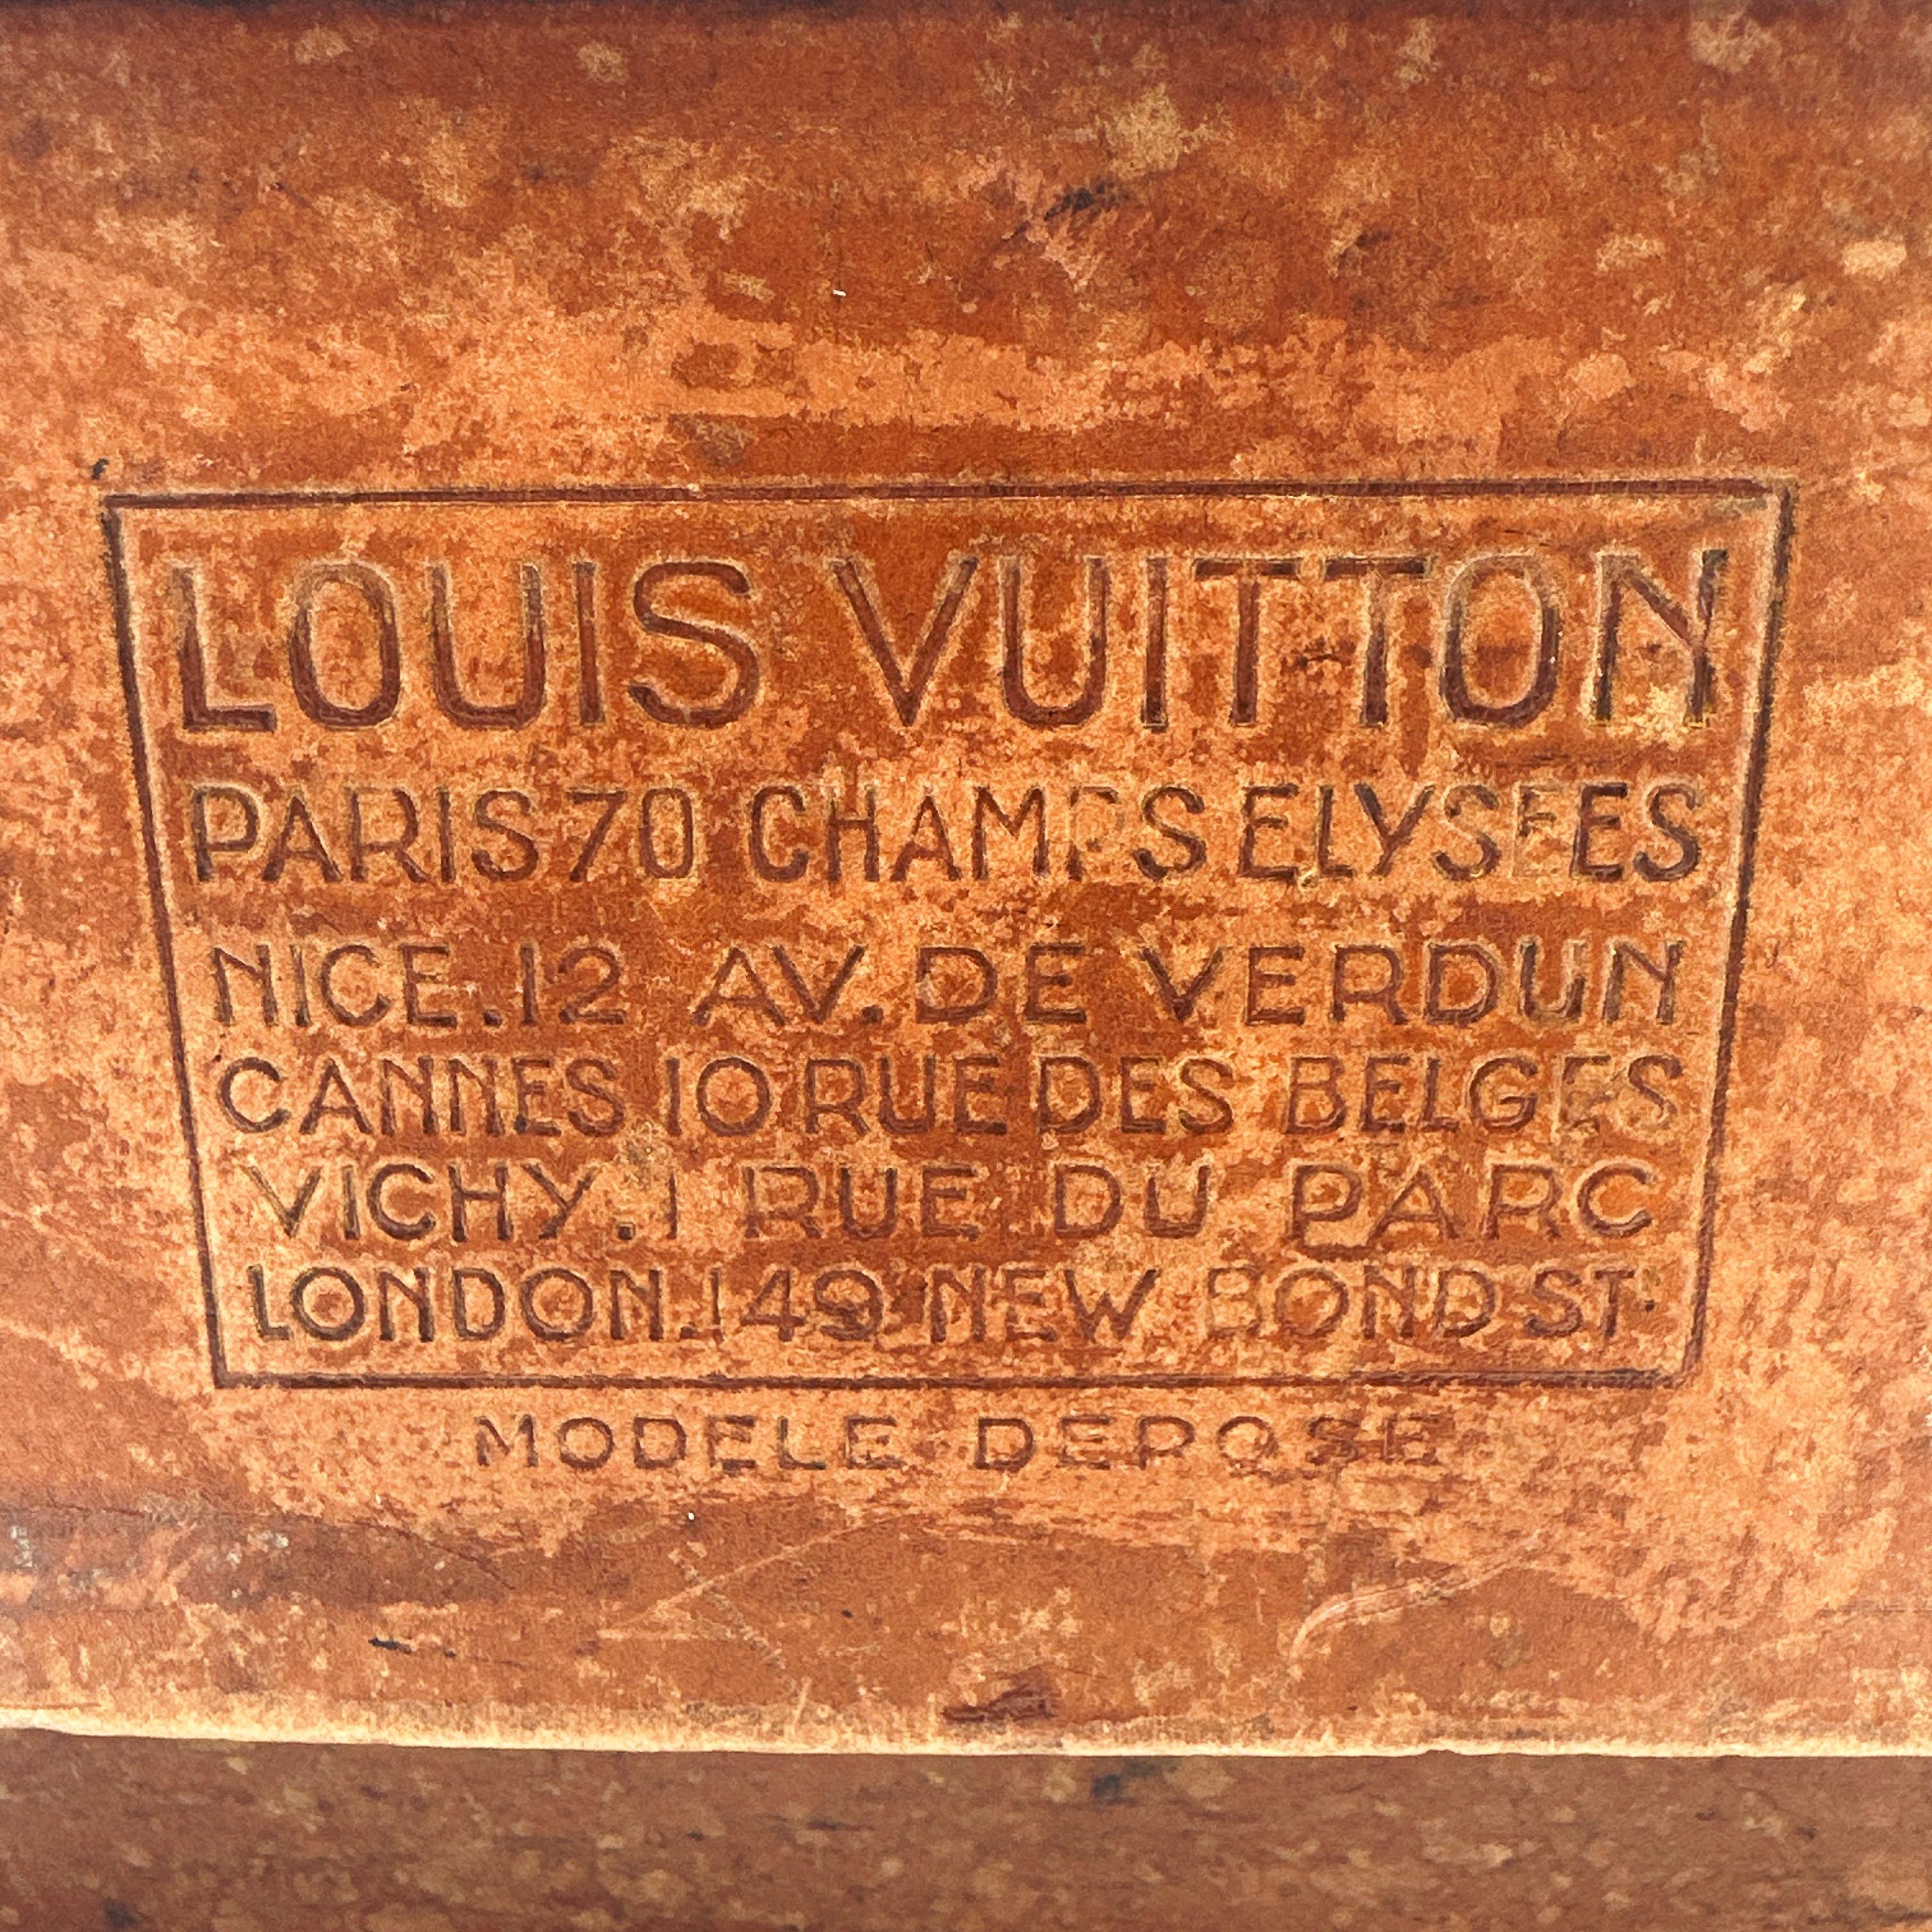 Voici une magnifique boîte d'échantillons vintage LOUIS VUITTON MARMOTTE. Fabriquée en matériau composite et renforcée par du cuir clouté, cette boîte servait à stocker des échantillons afin de pouvoir exposer la gamme de produits à des clients